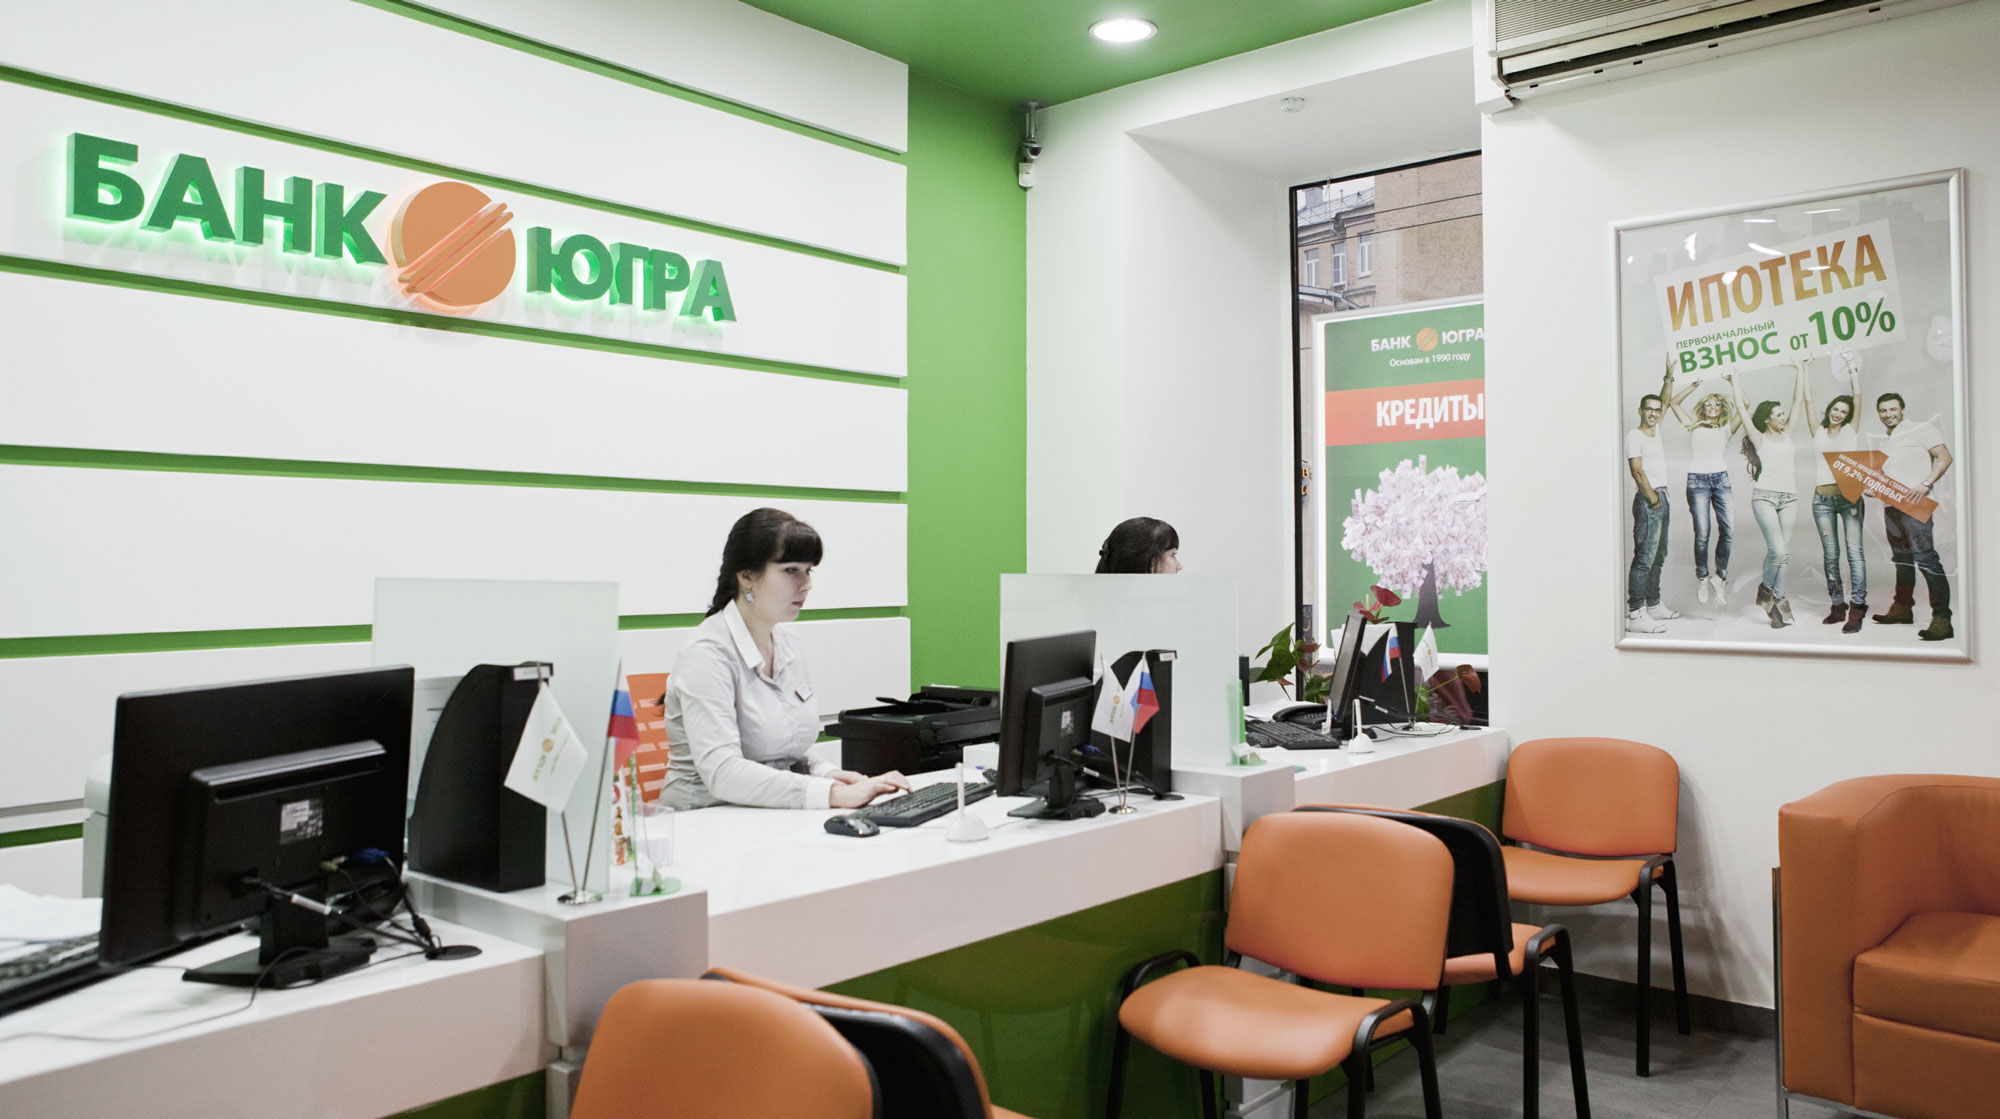 Бывшая управляющая отделения кредитной организации в Сургуте рассказала в интервью Ura.ru о связи банка с предприятиями бизнесменов Хотиных undefined